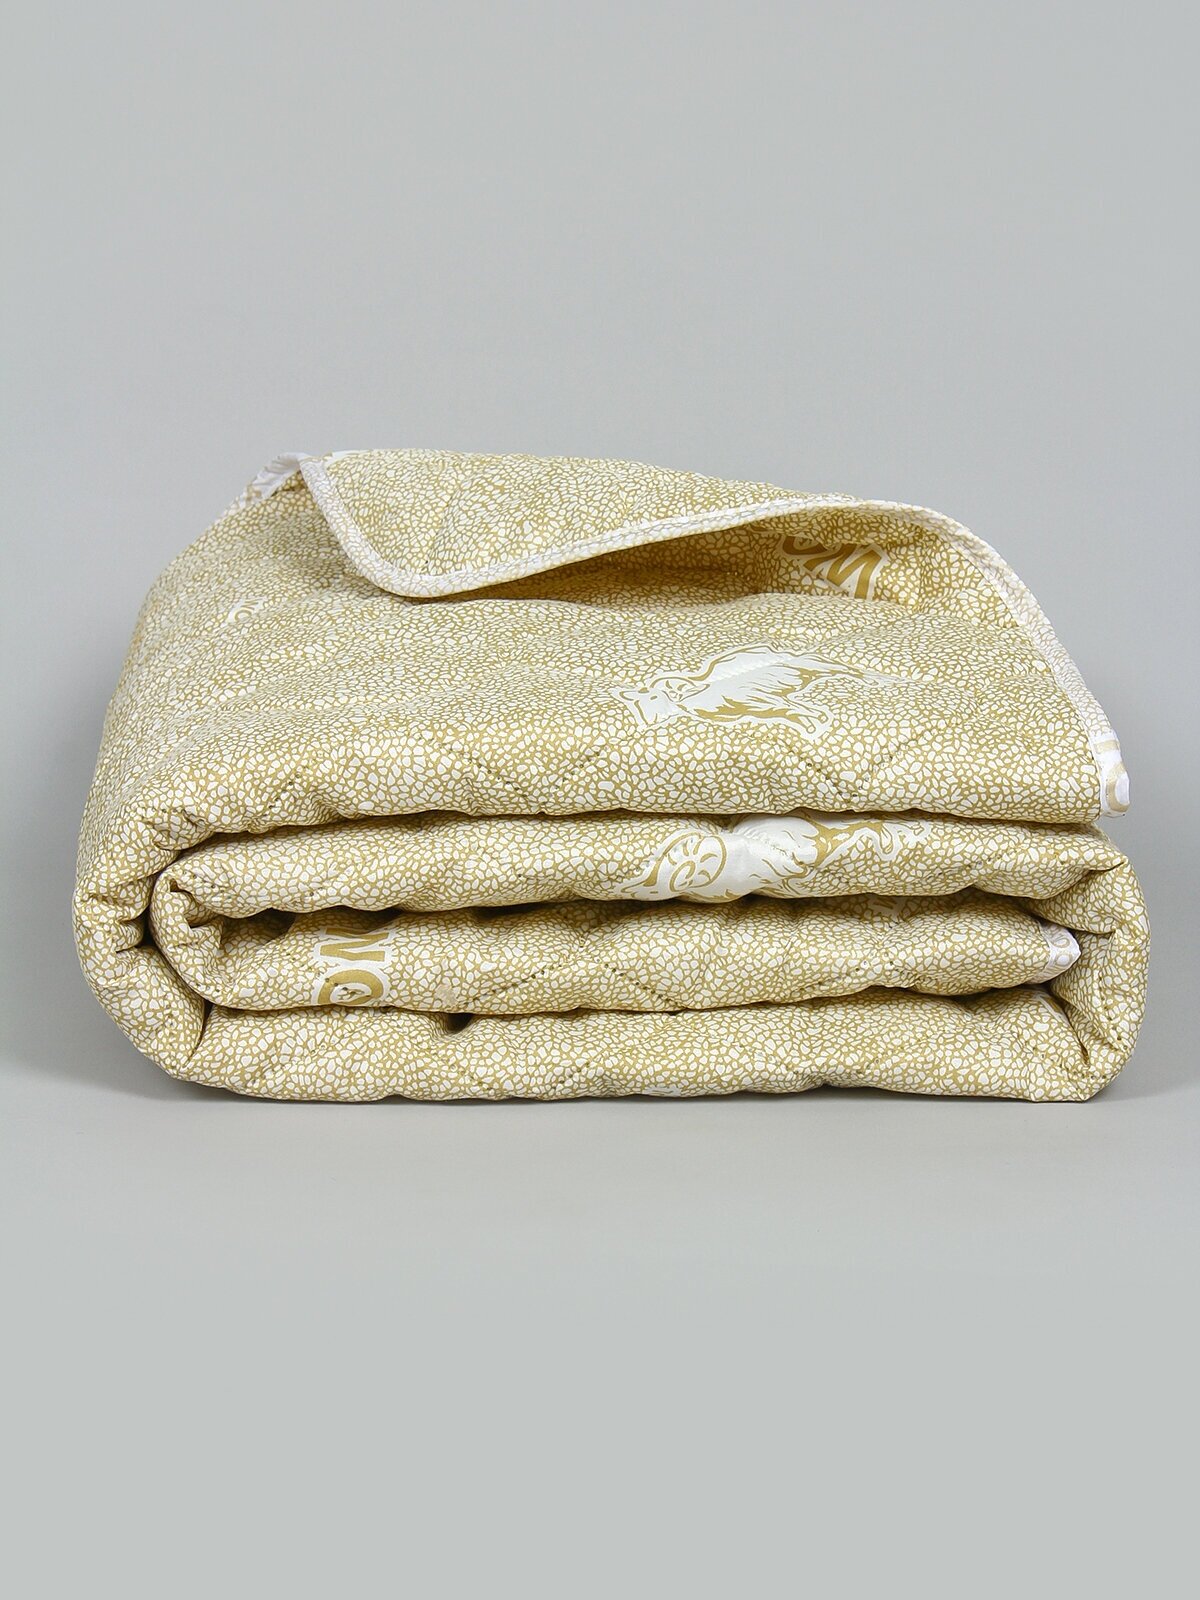 Одеяло "Овечья шерсть" облегченное, Евро размер, в полиэстере, плотность 150 г/м2 - фотография № 7